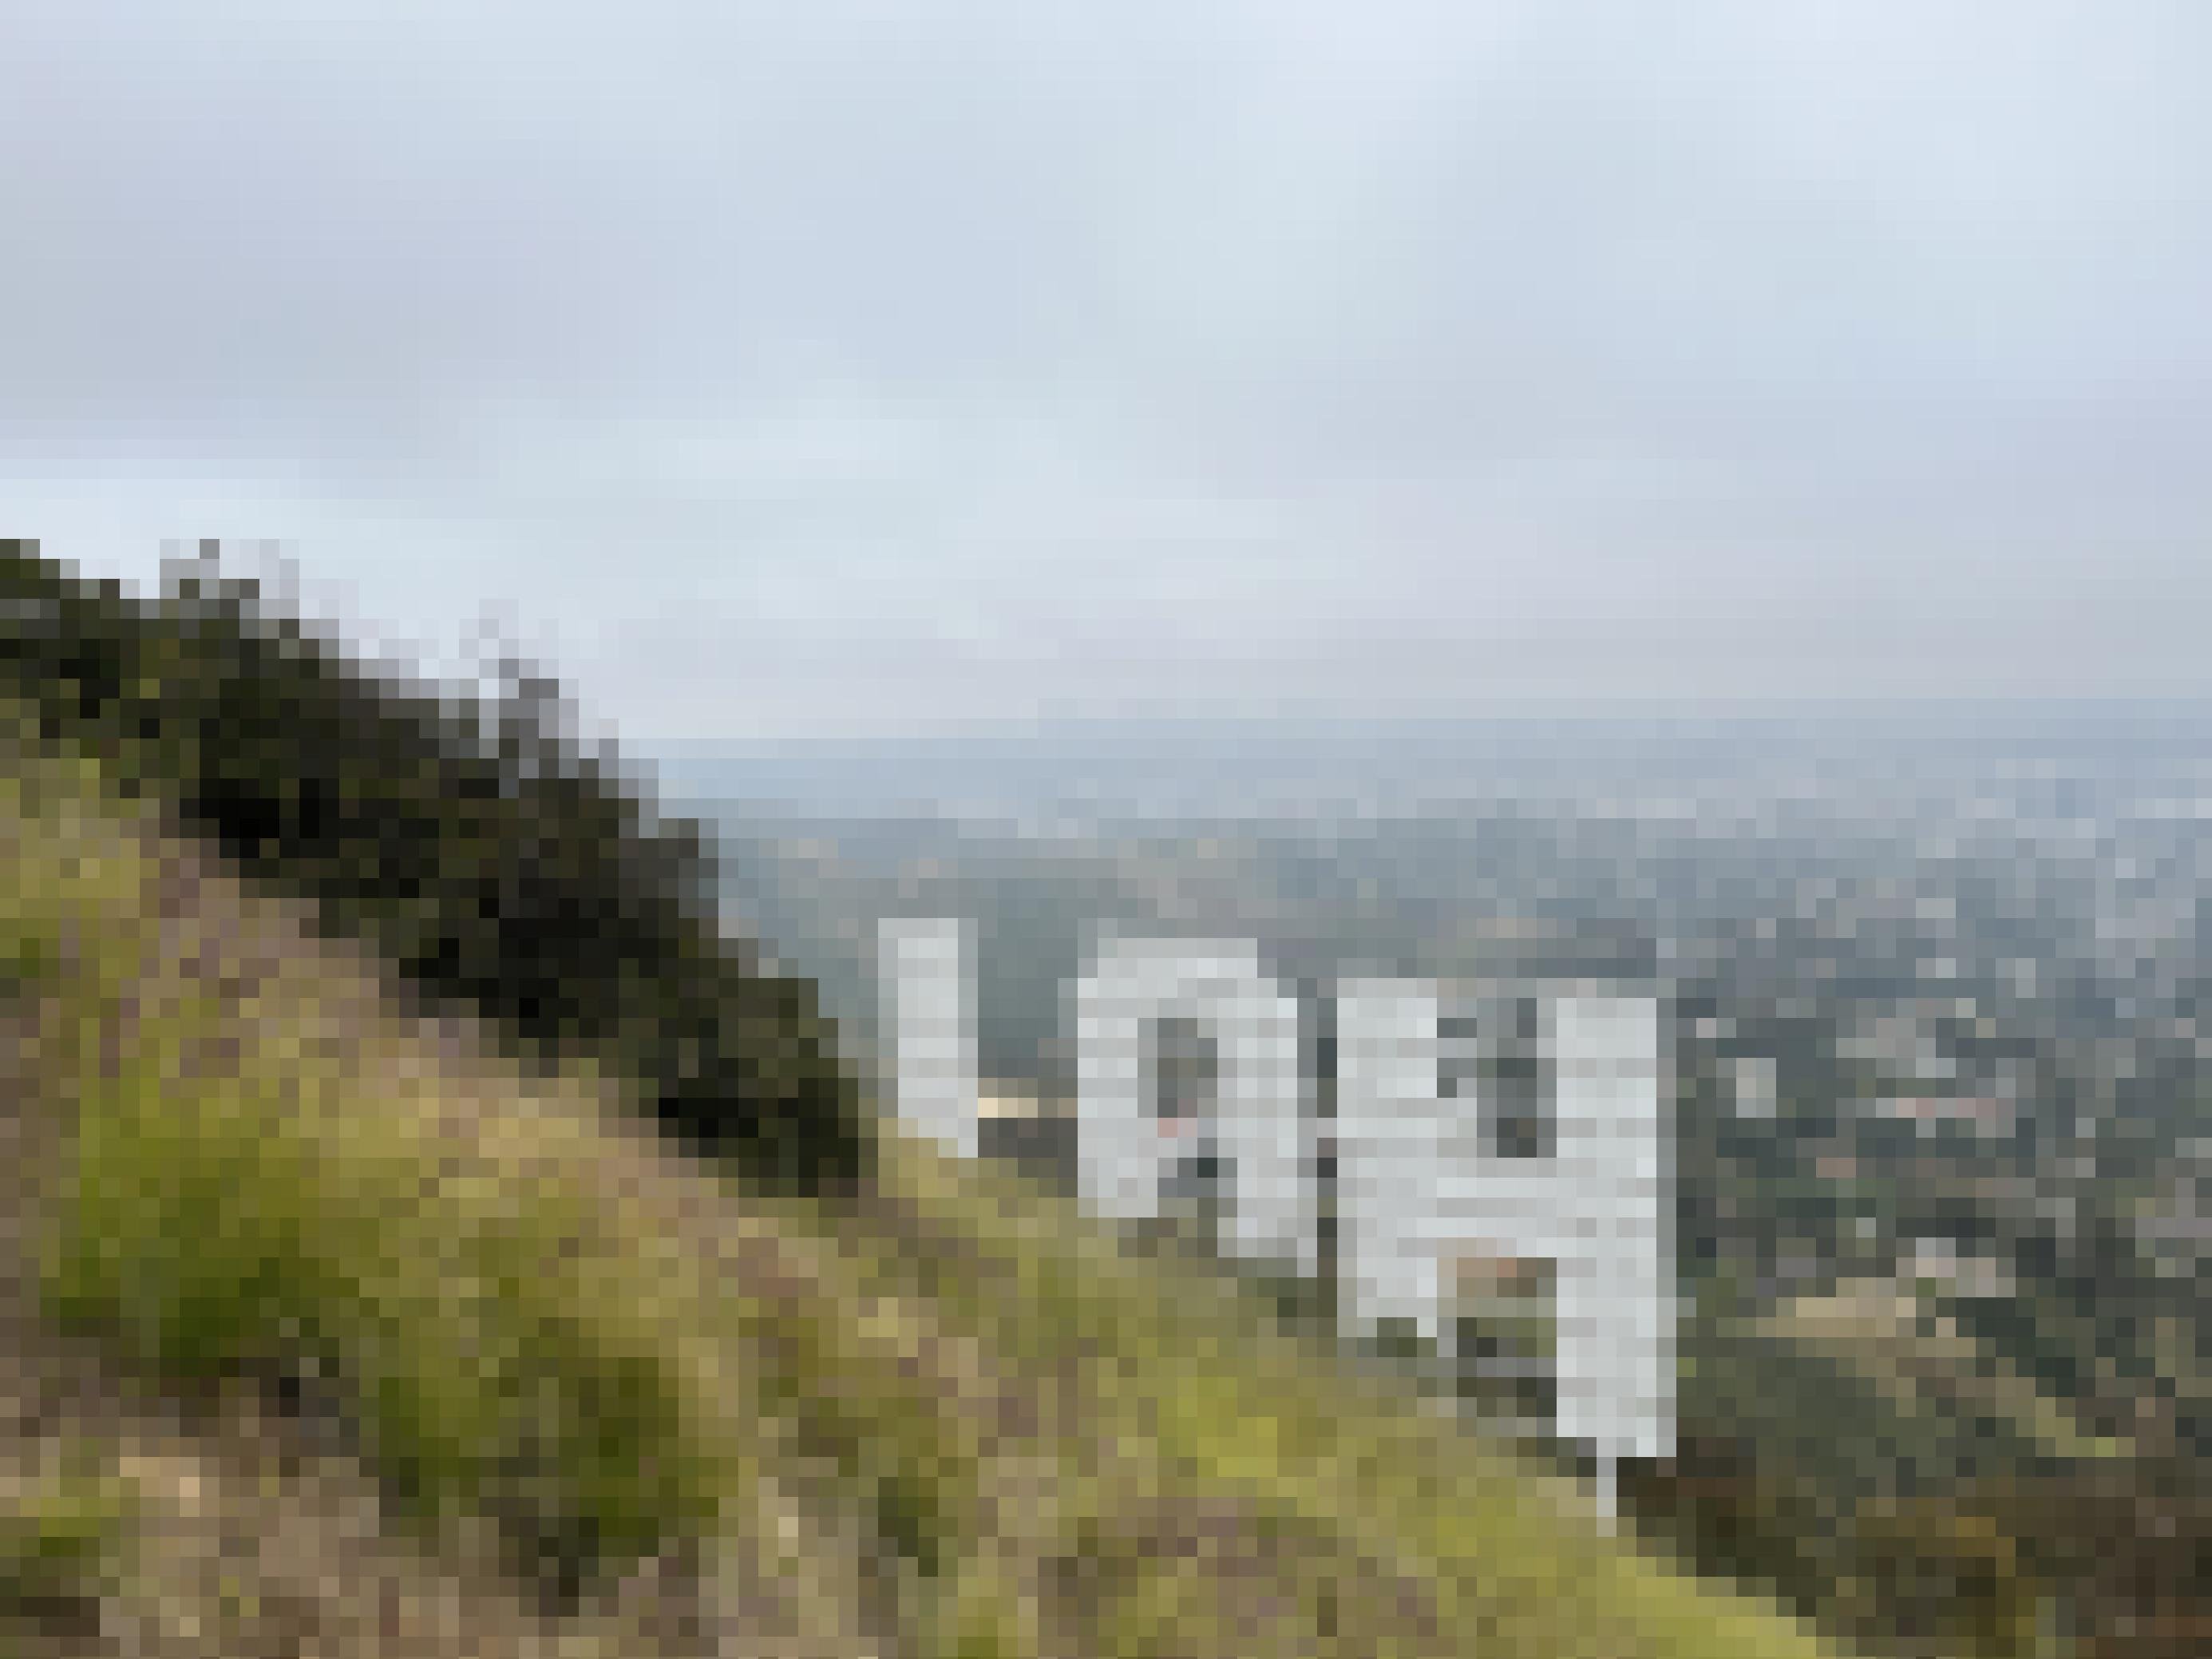 Das Hollywoodzeichen von hinten an einem steilen Hügel in diesigem Wetter. Nur die ersten drei Buchstaben – H, O, und L sind sichtbar.